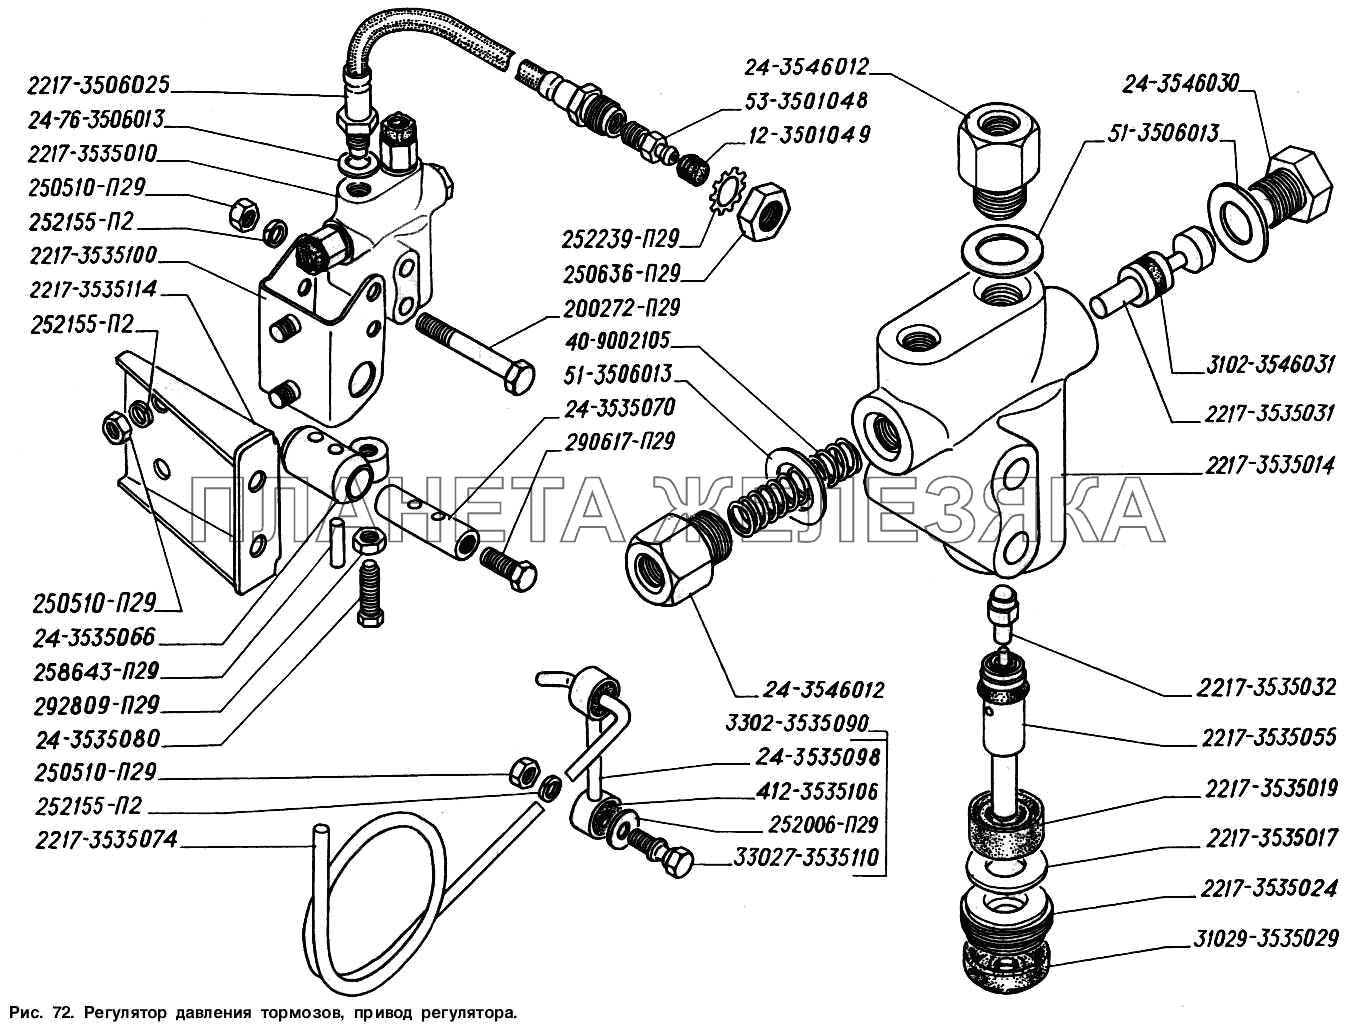 Регулятор давления тормозов, привод регулятора ГАЗ-2217 (Соболь)